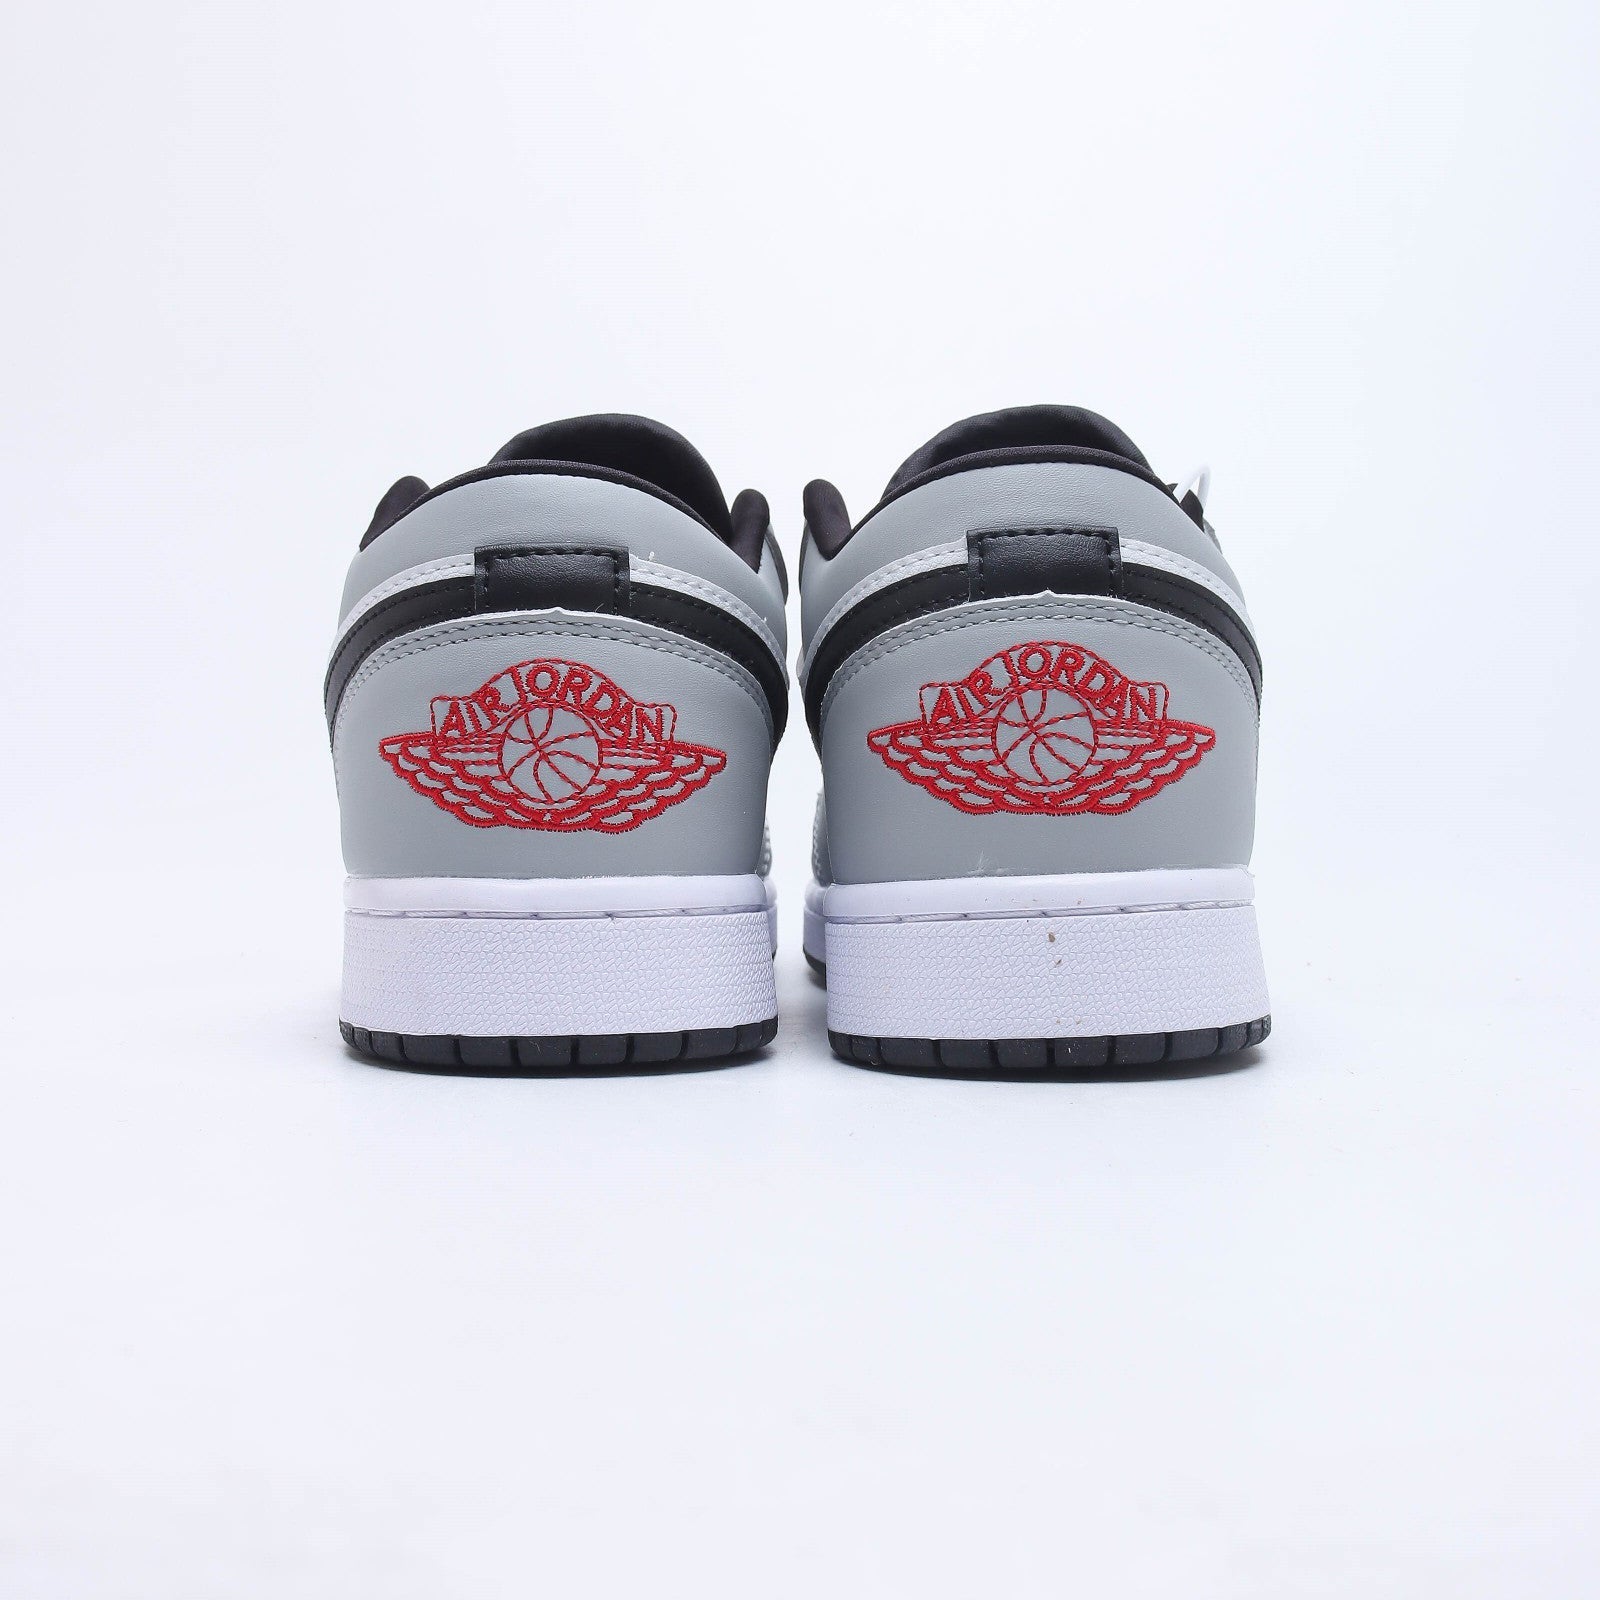 Nike Air Jordan 1 Low Light Smoke Grey Sneakers Shoes